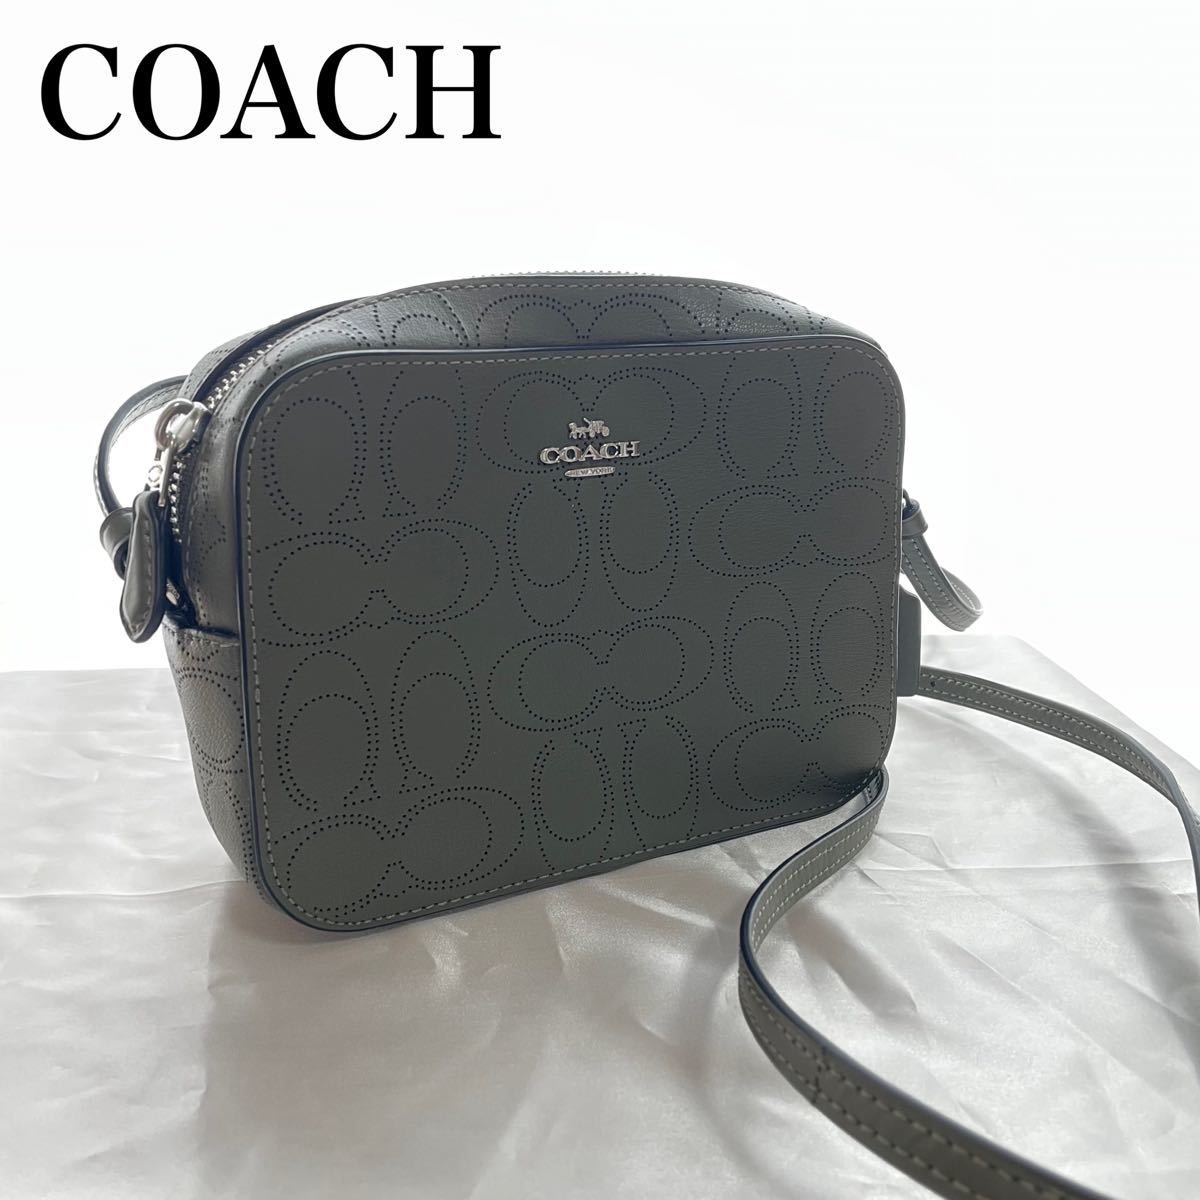 COACH コーチ ショルダーバッグ ミニカメラバッグ レディースファッション バッグ